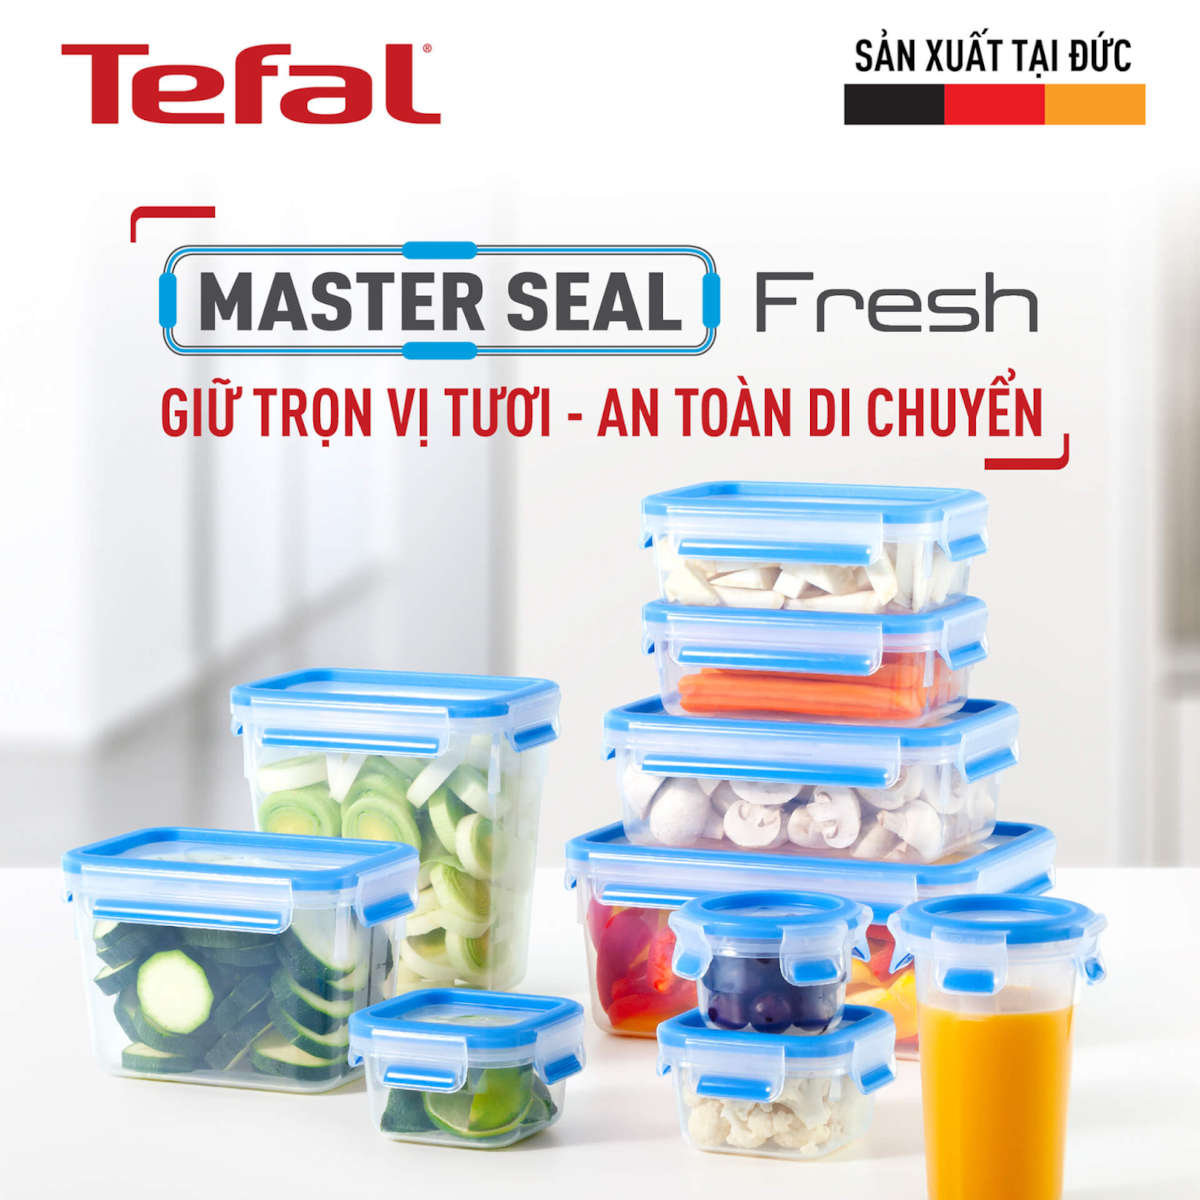 Hộp nhựa vuông 1.1L Tefal Masterseal Fresh K3021322, sản xuất tại Đức